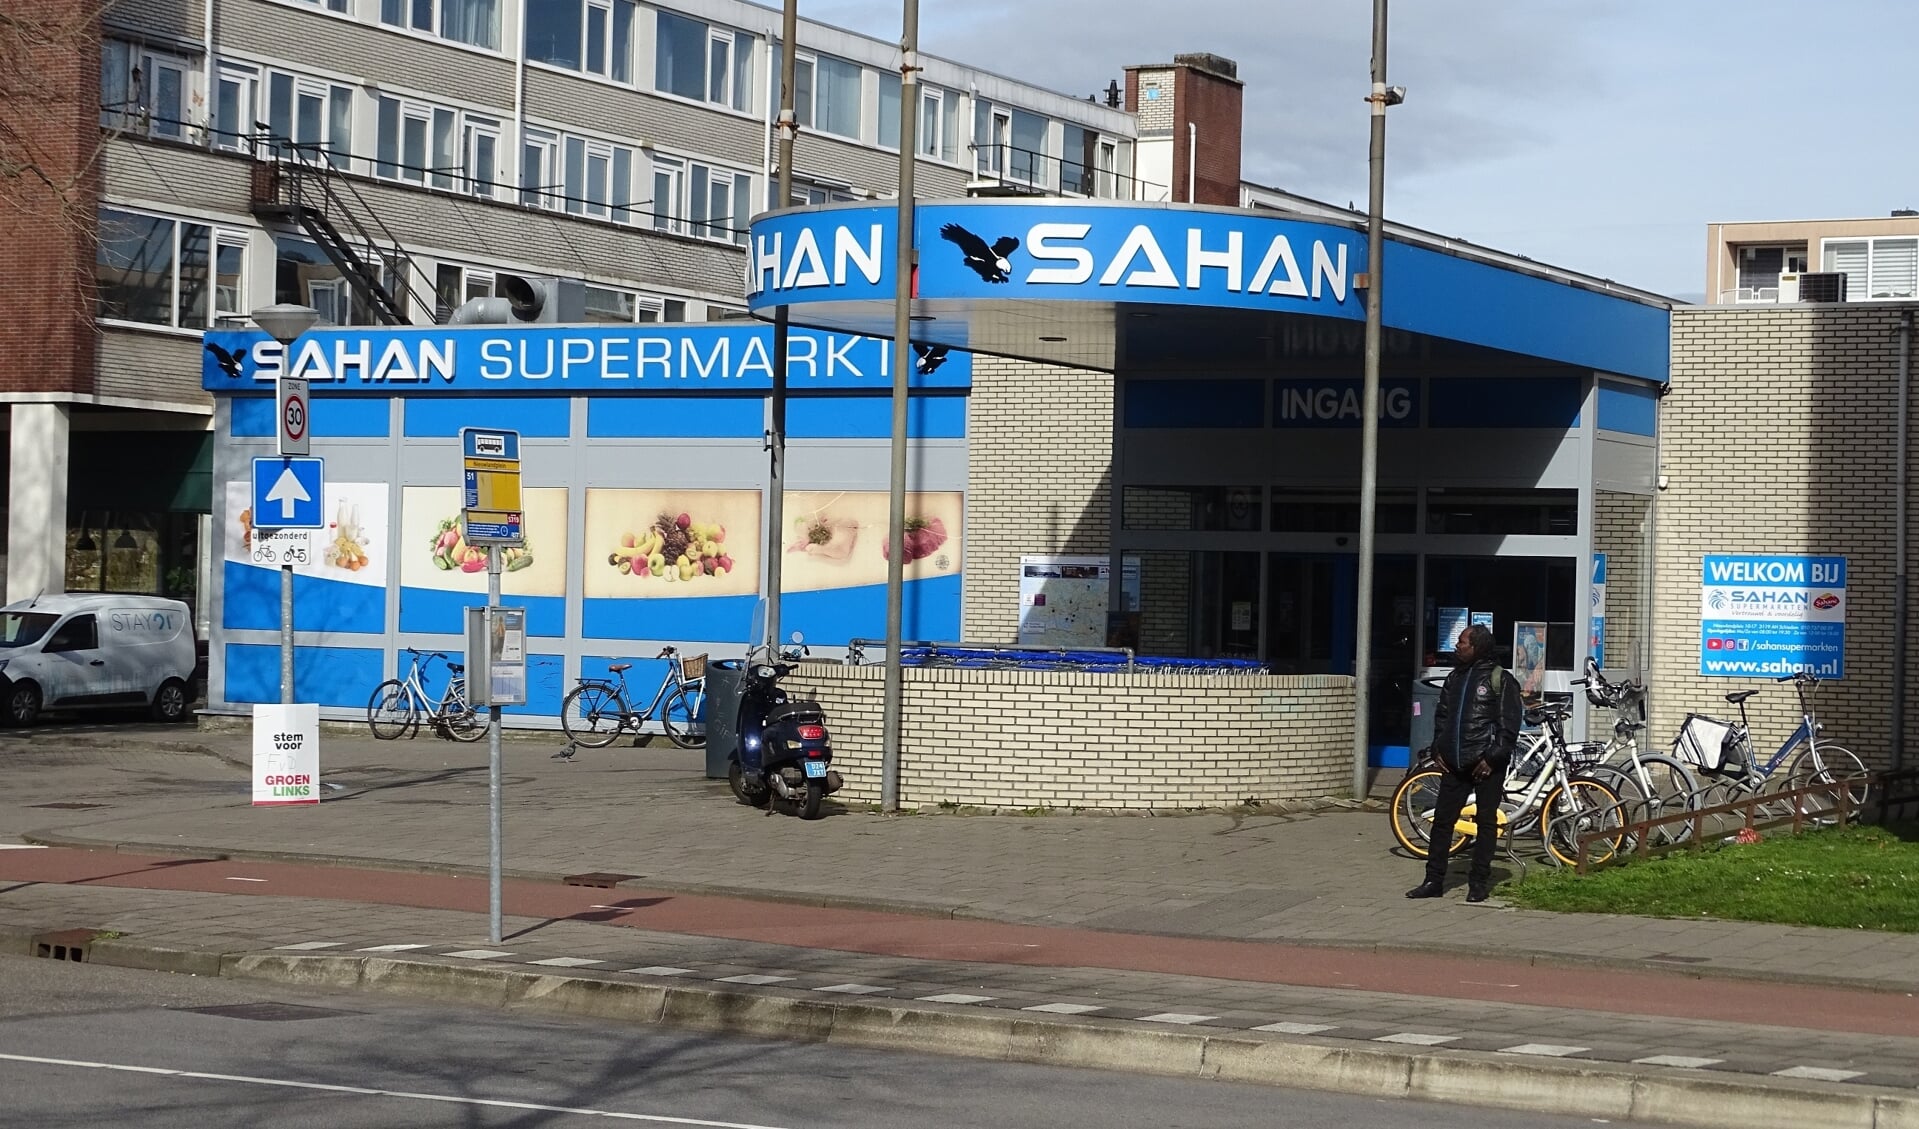 Sahan Supermarkt heeft al zeven vestigingen, waaronder één op het Nieuwlandplein in Schiedam. (Foto: UWM)